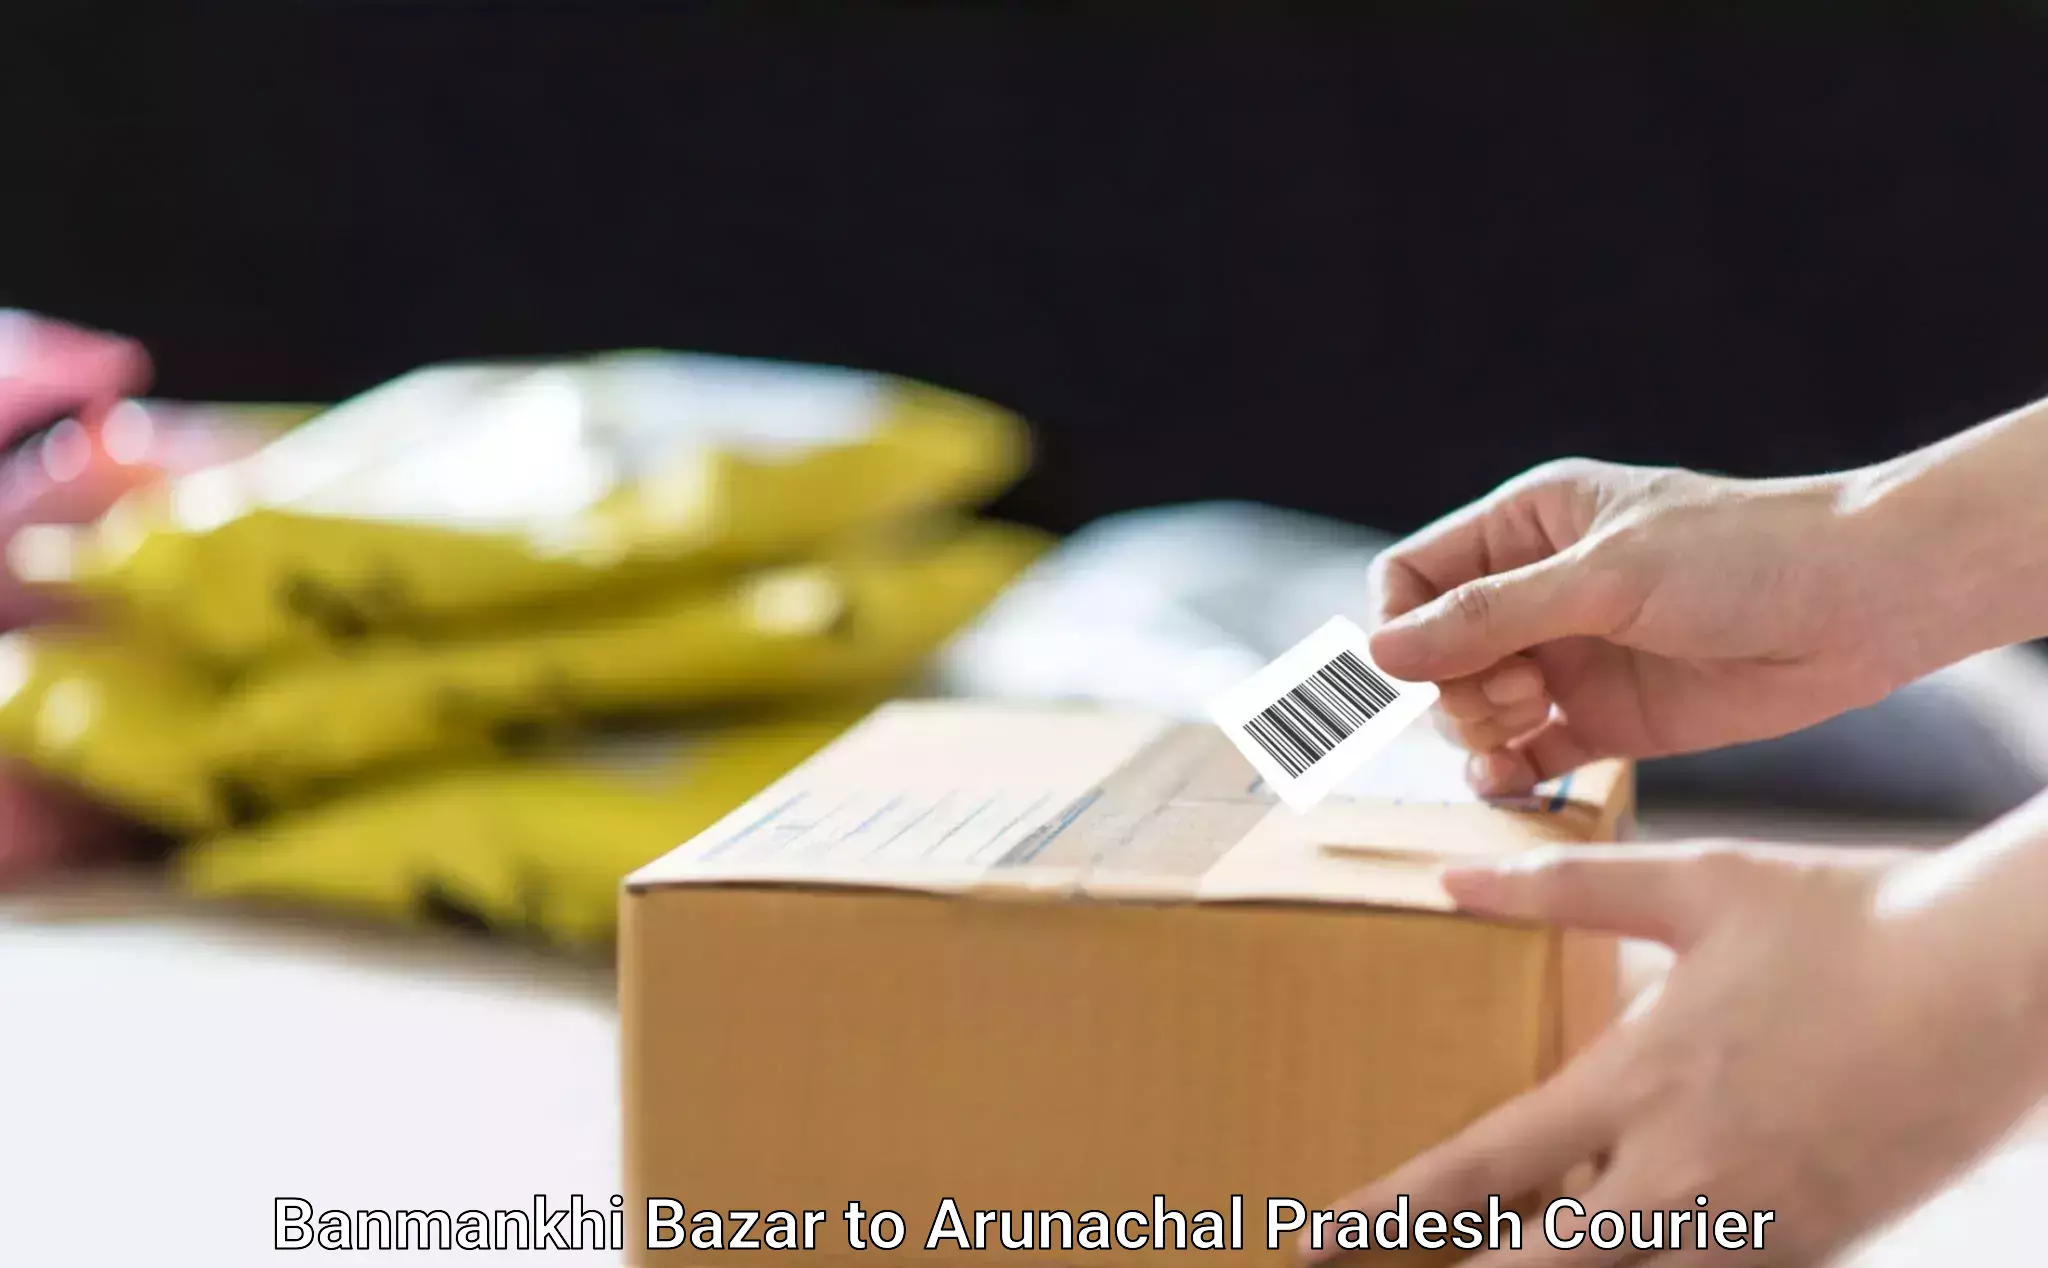 Furniture moving and handling Banmankhi Bazar to Arunachal Pradesh